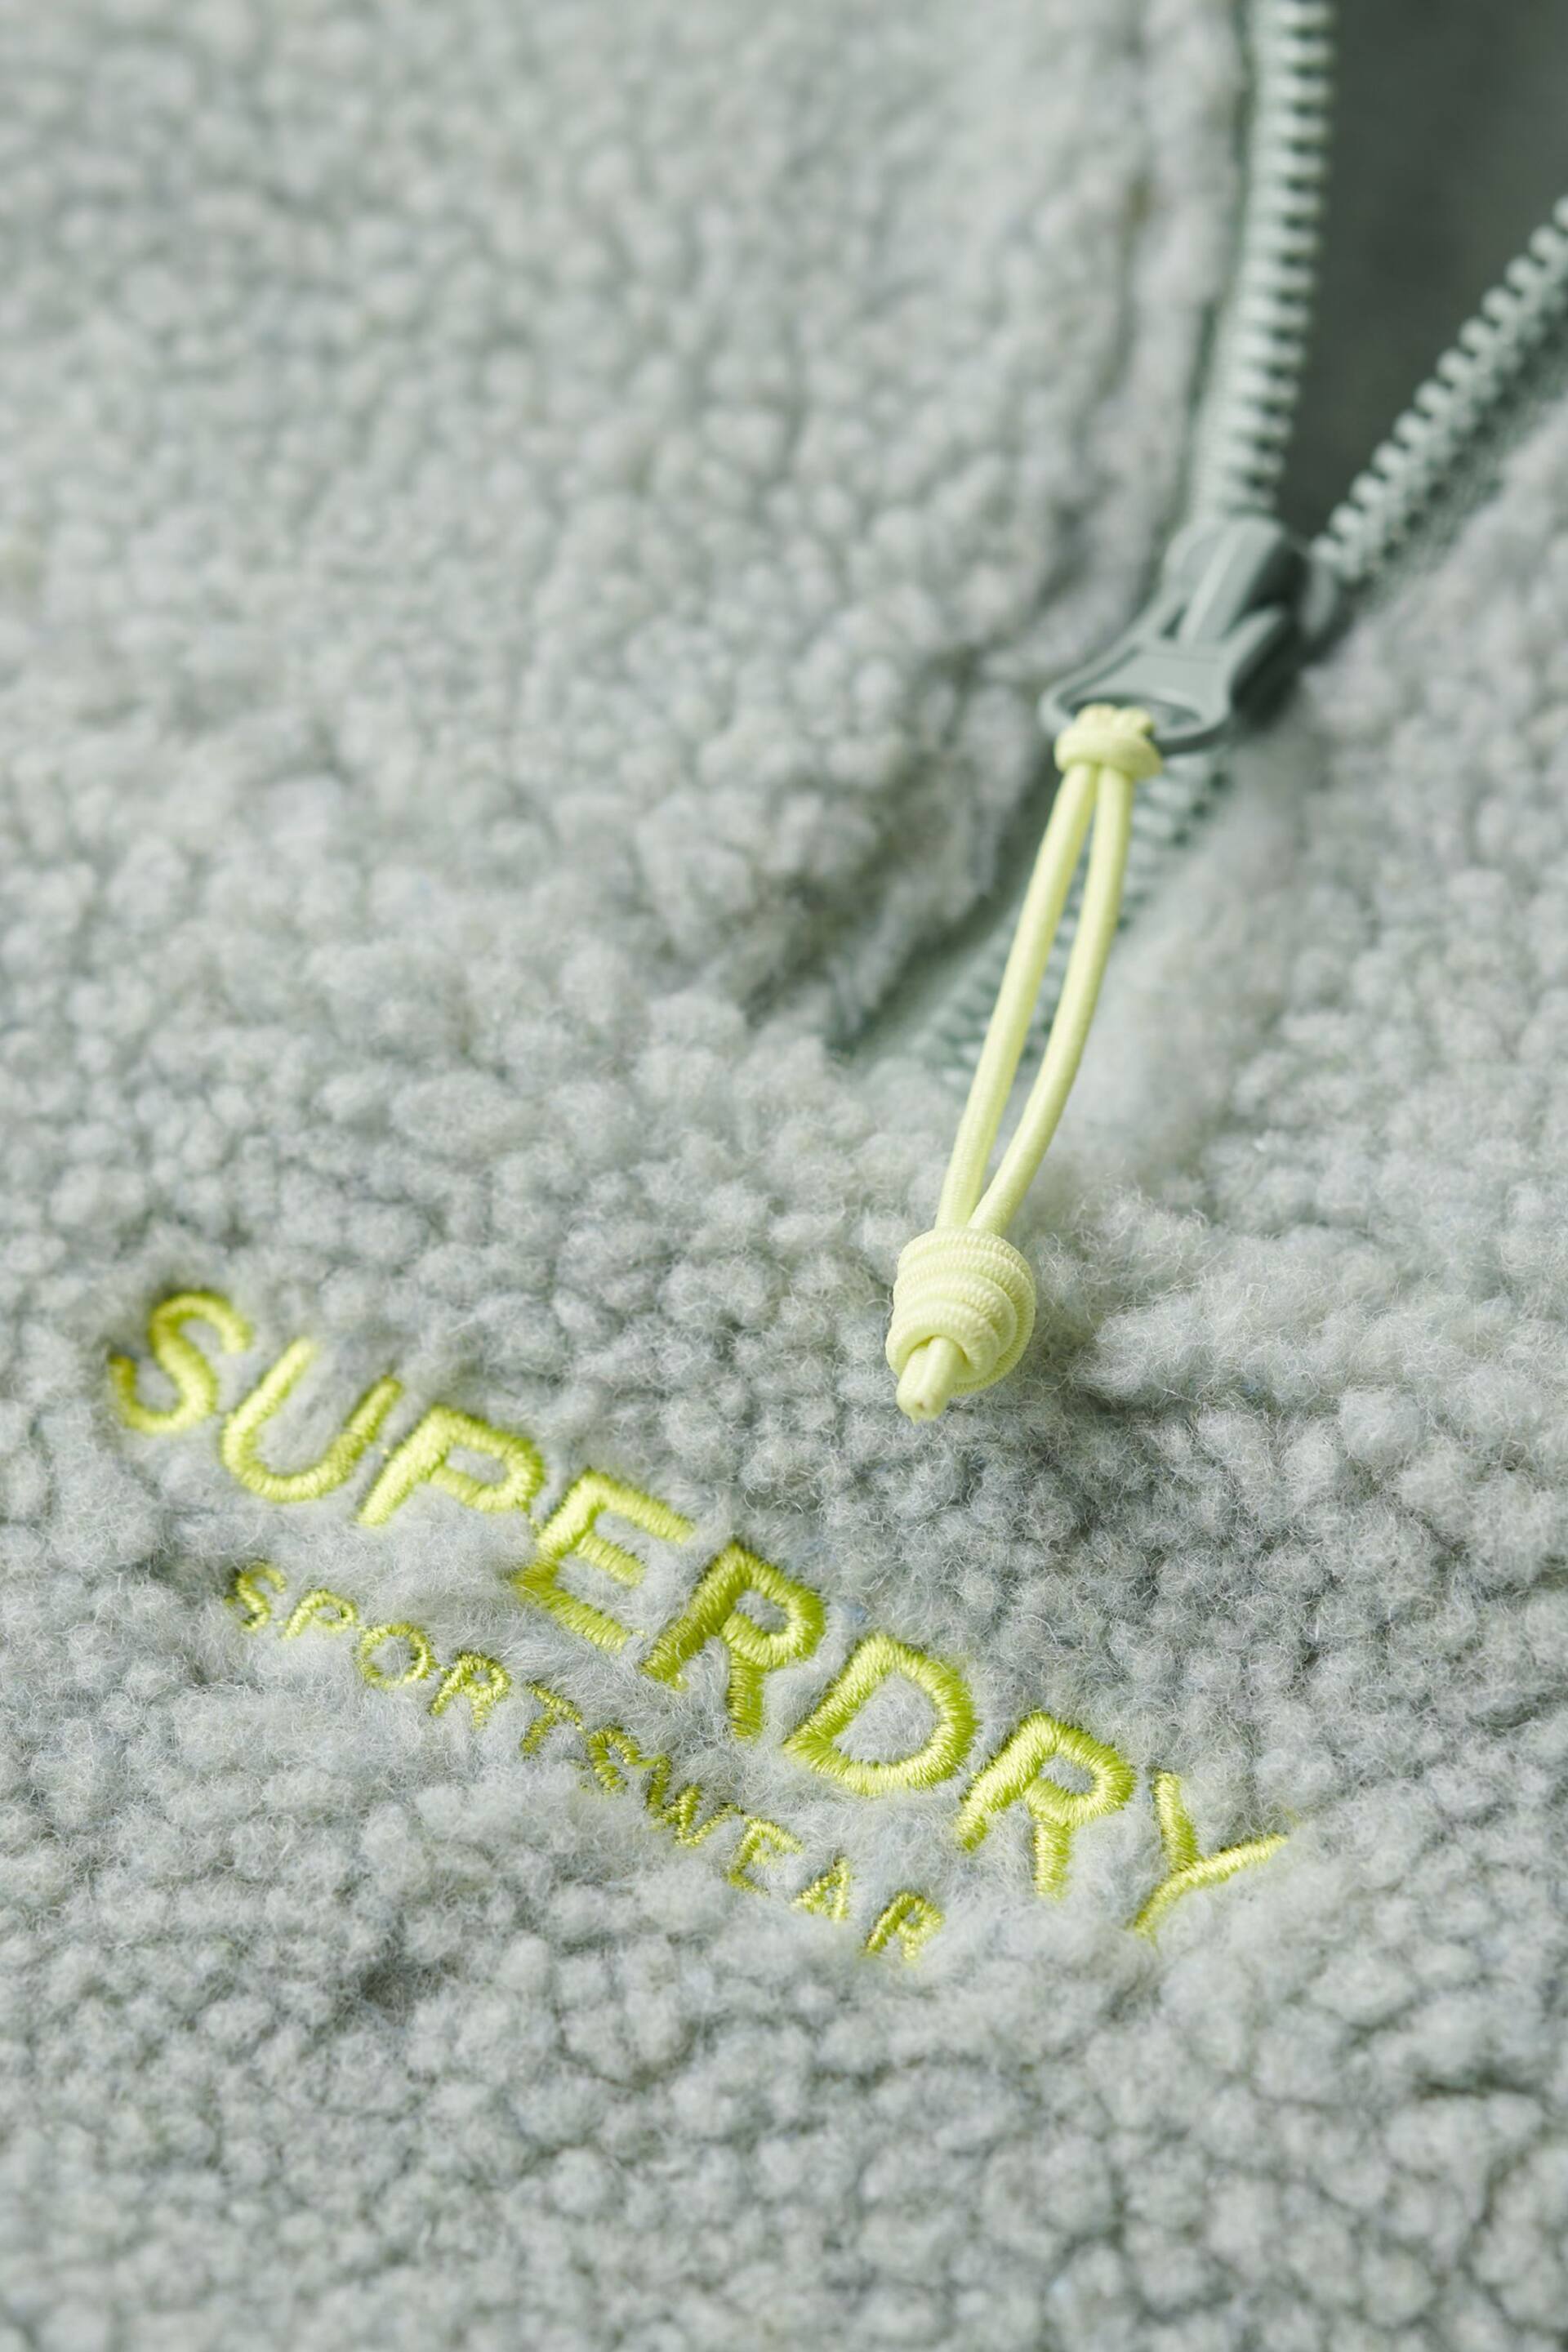 Superdry Green Embriodered Borg Half Zip Sweatshirt - Image 6 of 6